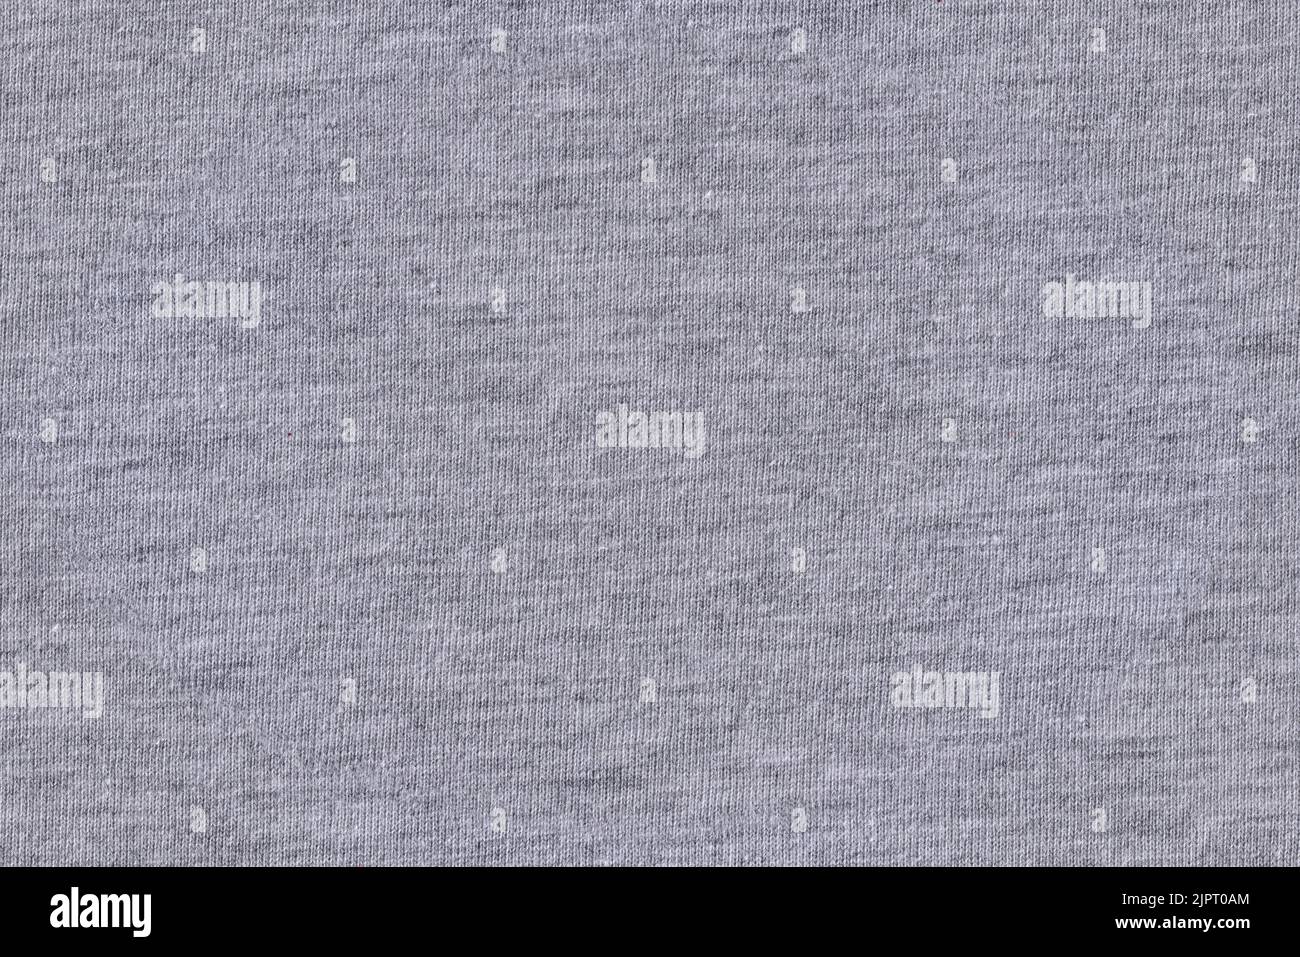 Tissu en coton gris, gros plan macro du t-shirt réalisé dans un motif tiléable sans couture, largeur de l'image 20cm Banque D'Images